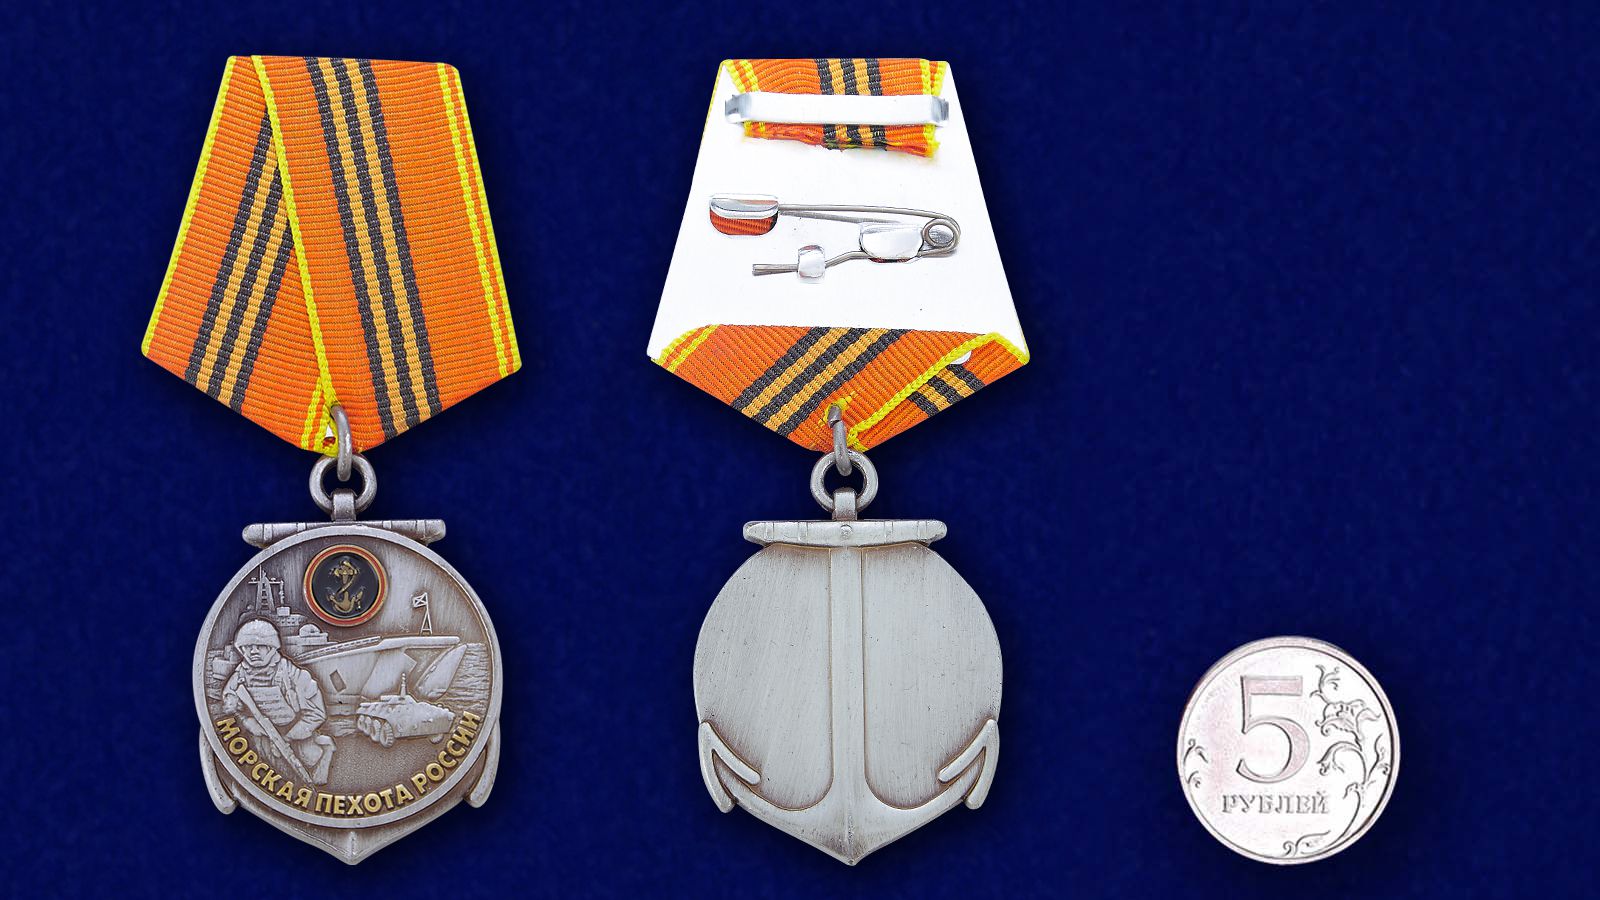 Медаль "310 лет Морской пехоте" 